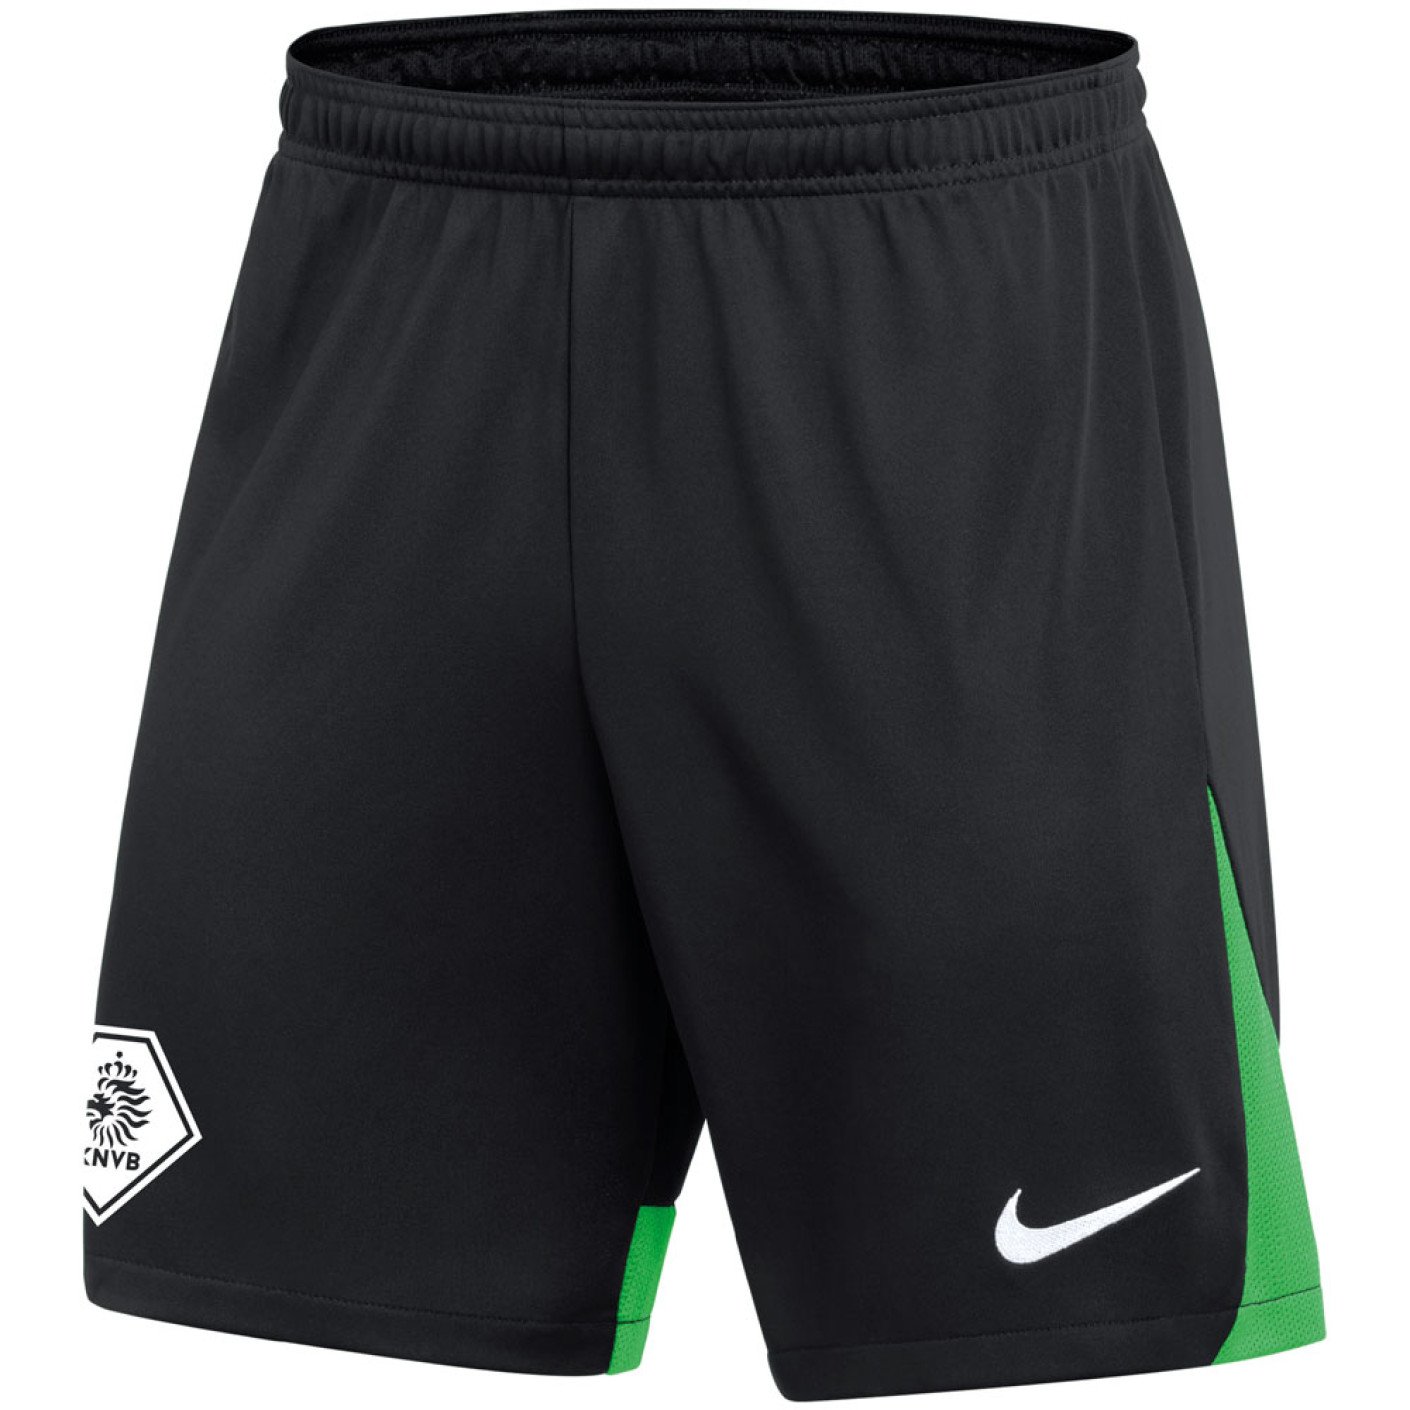 Nike KNVB Trainingsbroekje Zwart Groen Wit